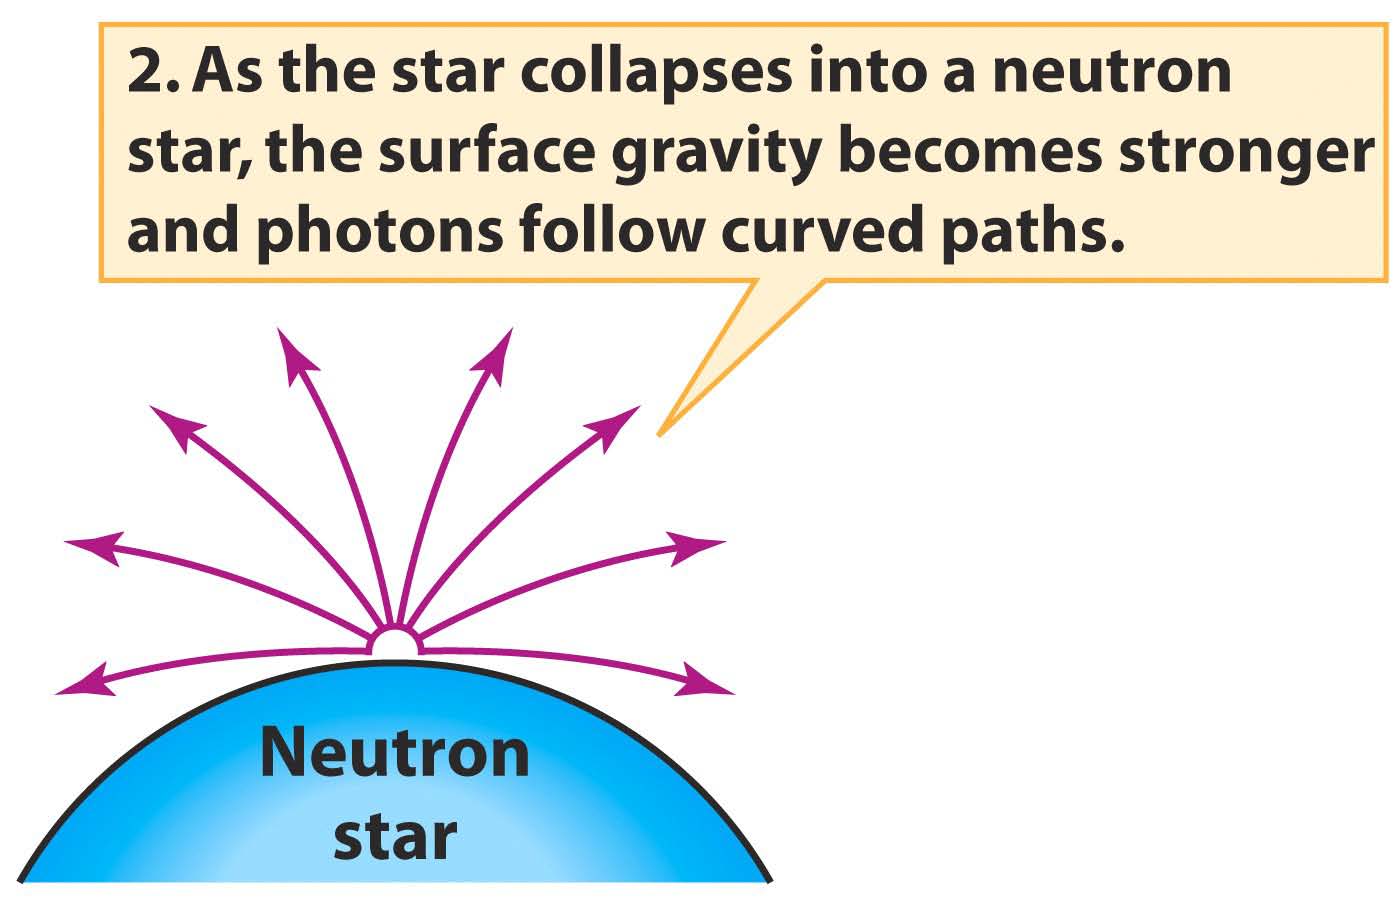 2. Καθώς ο αστέρας καταρρέει σε ένα αστέρα νετρονίων, η επιφανειακή του βαρύτητα γίνεται όλο και